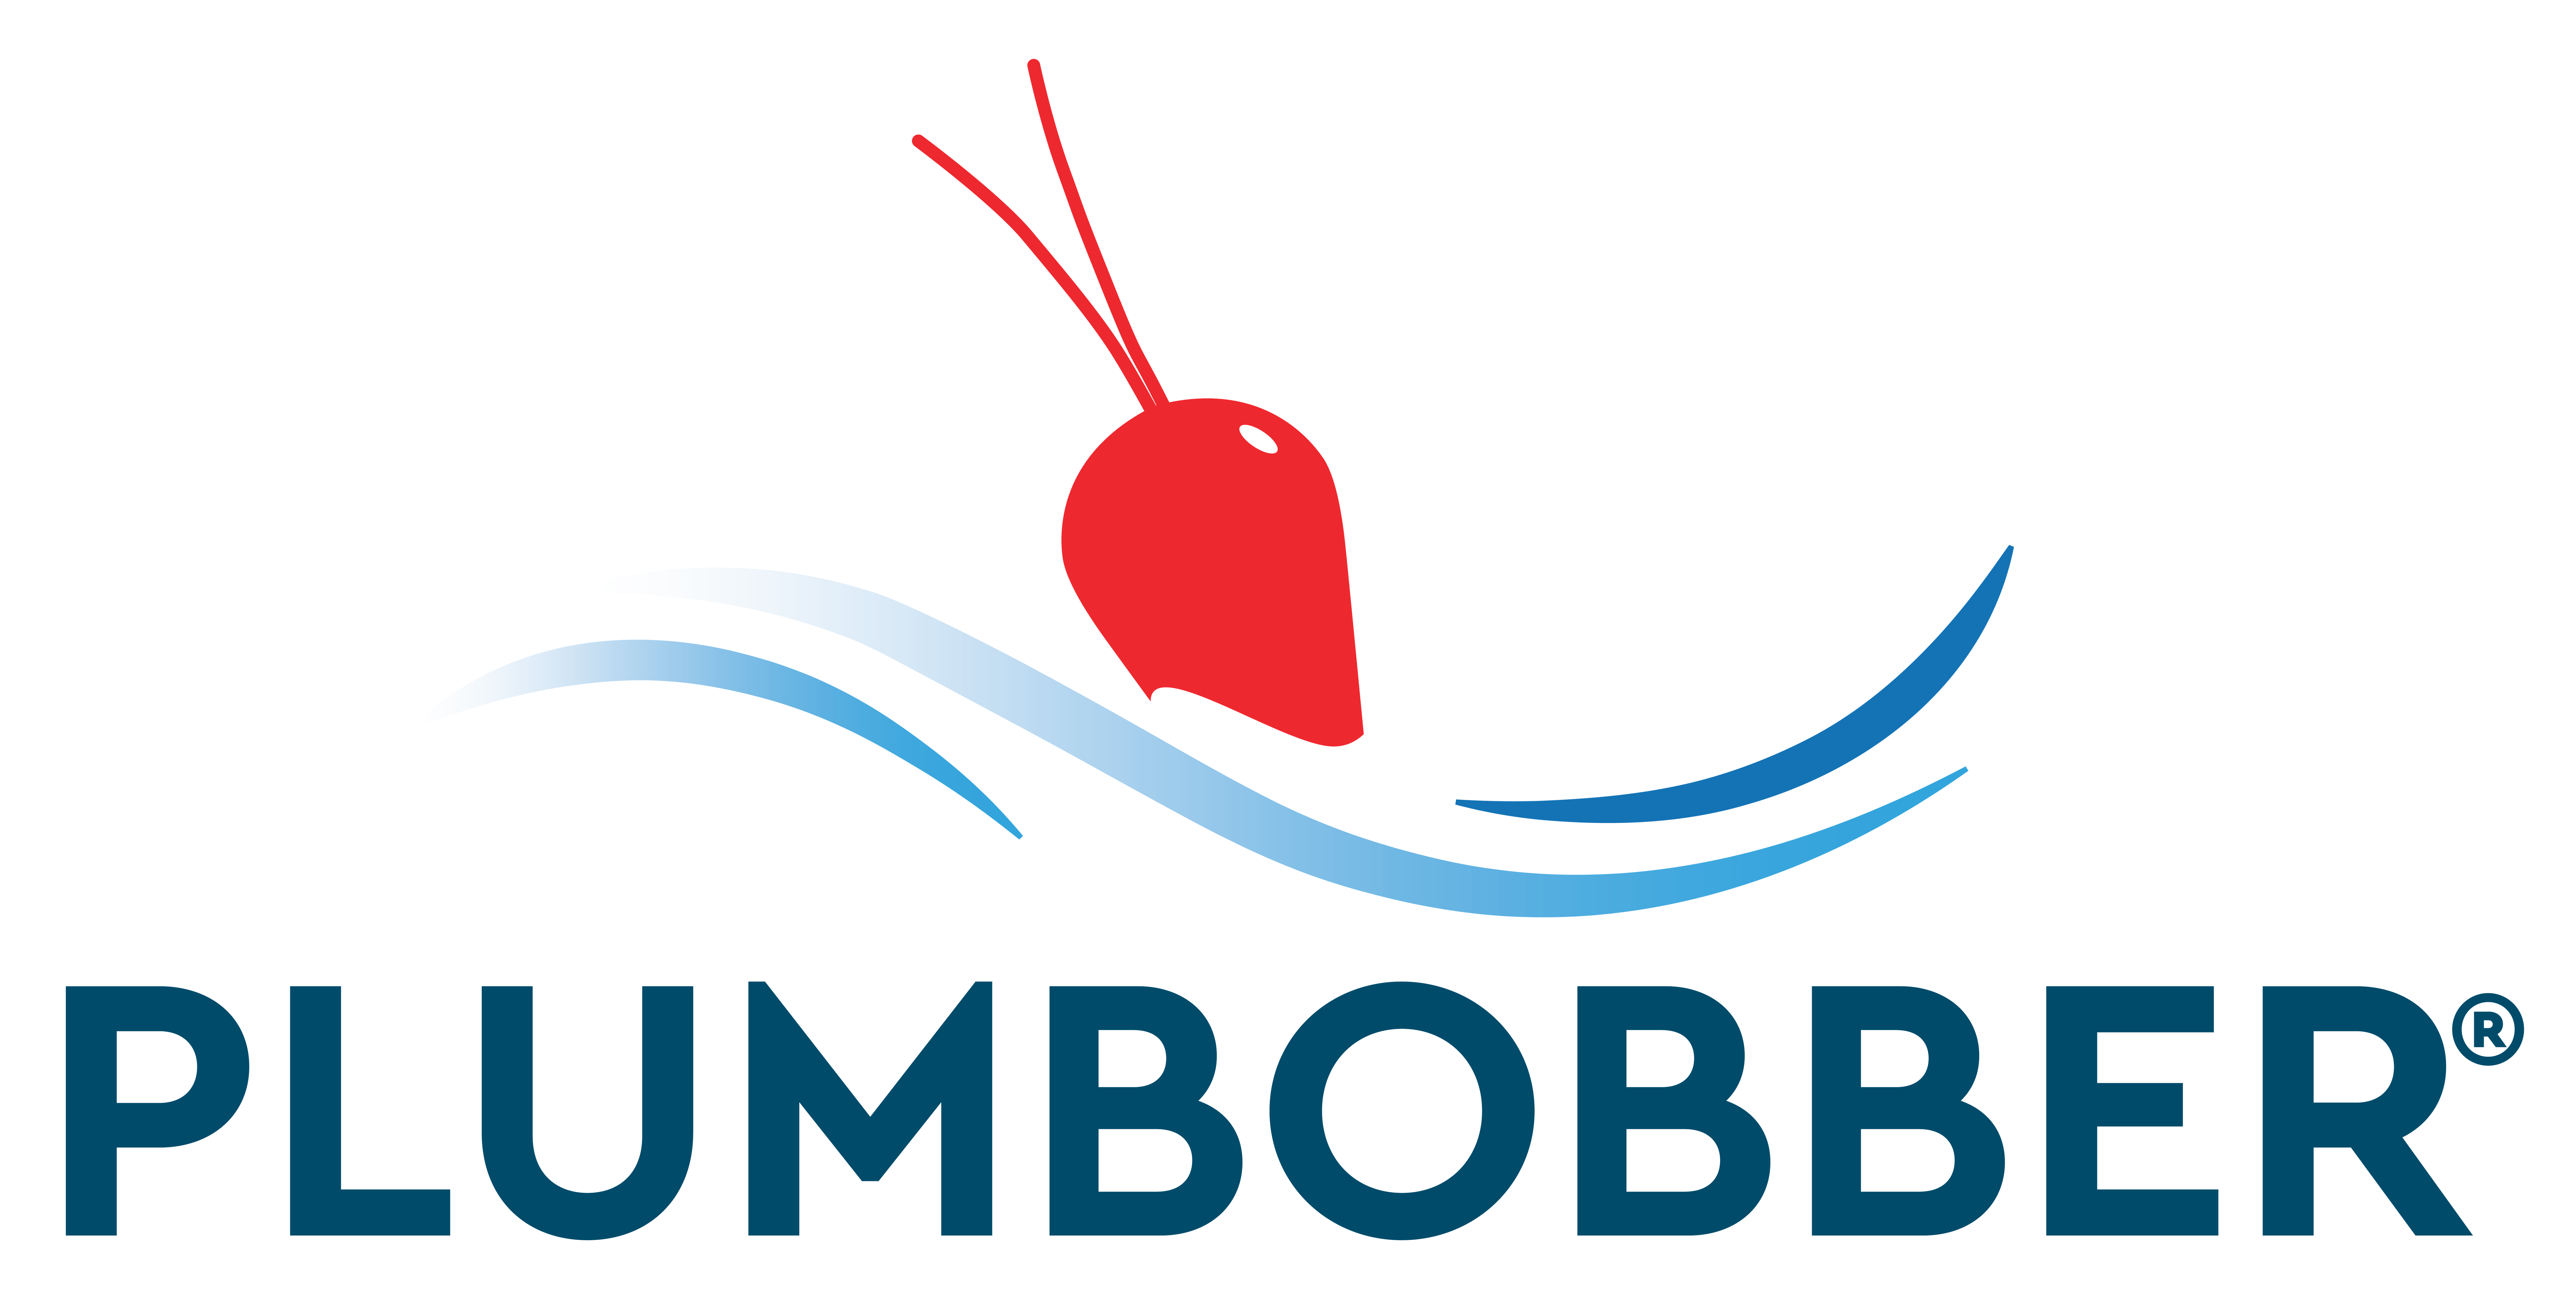 Plumbobber logo